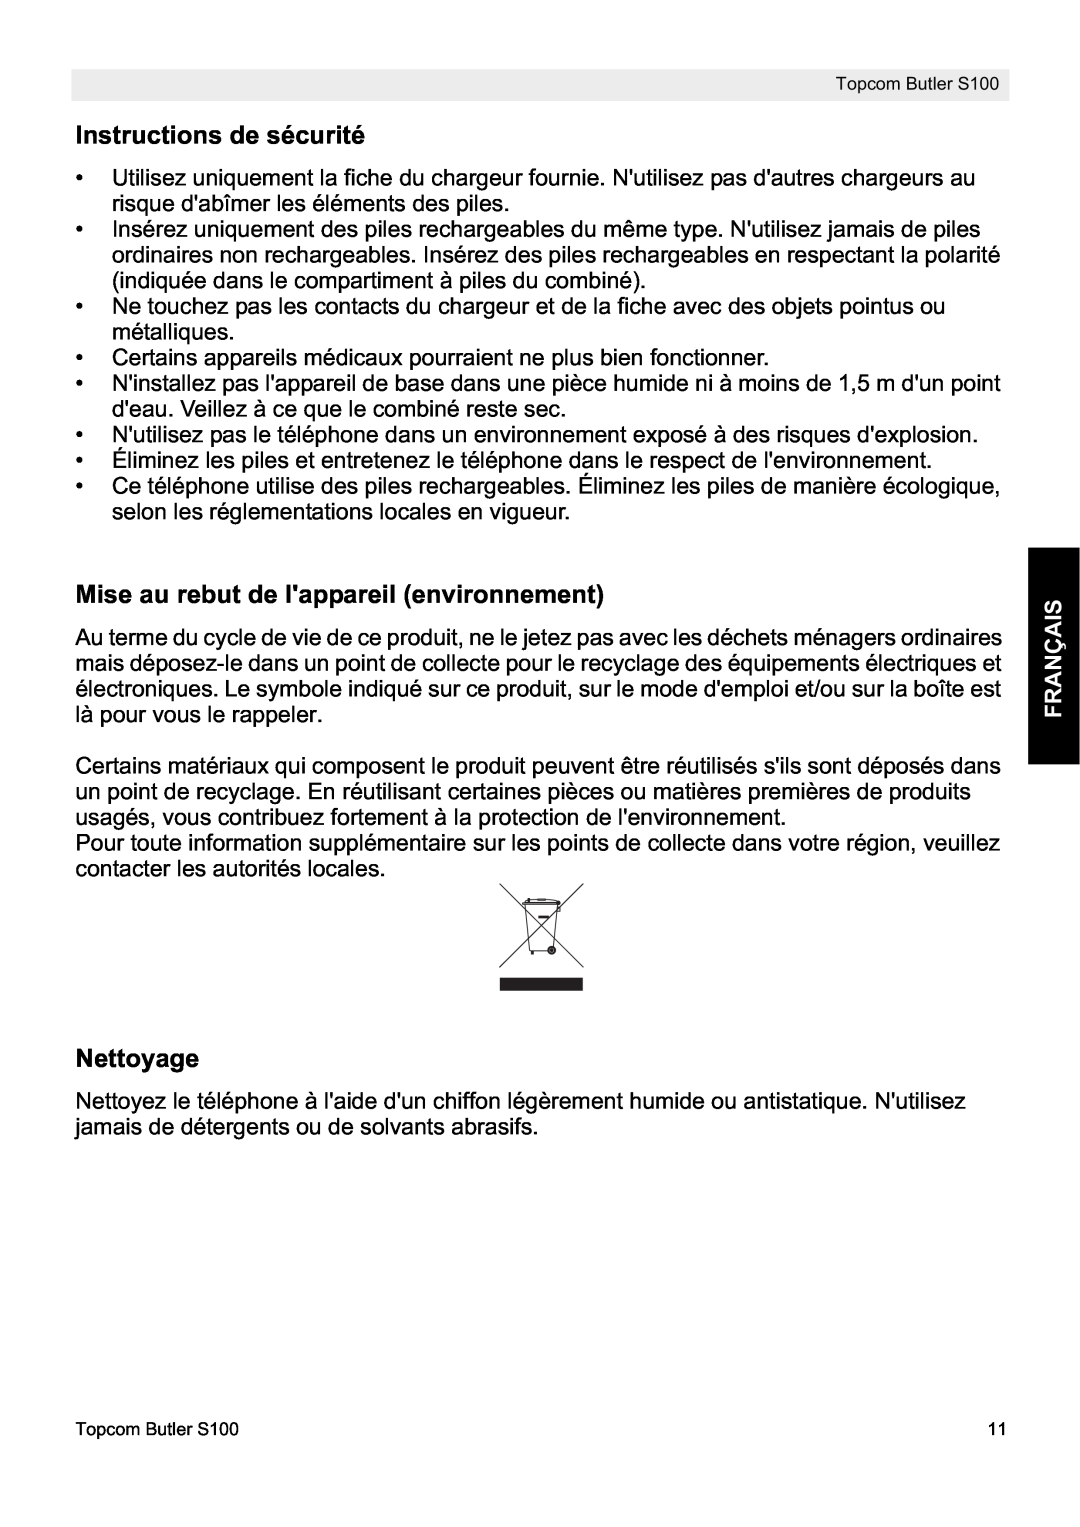 Topcom S100 manual do utilizador Instructions de sécurité, Mise au rebut de lappareil environnement, Nettoyage, Français 